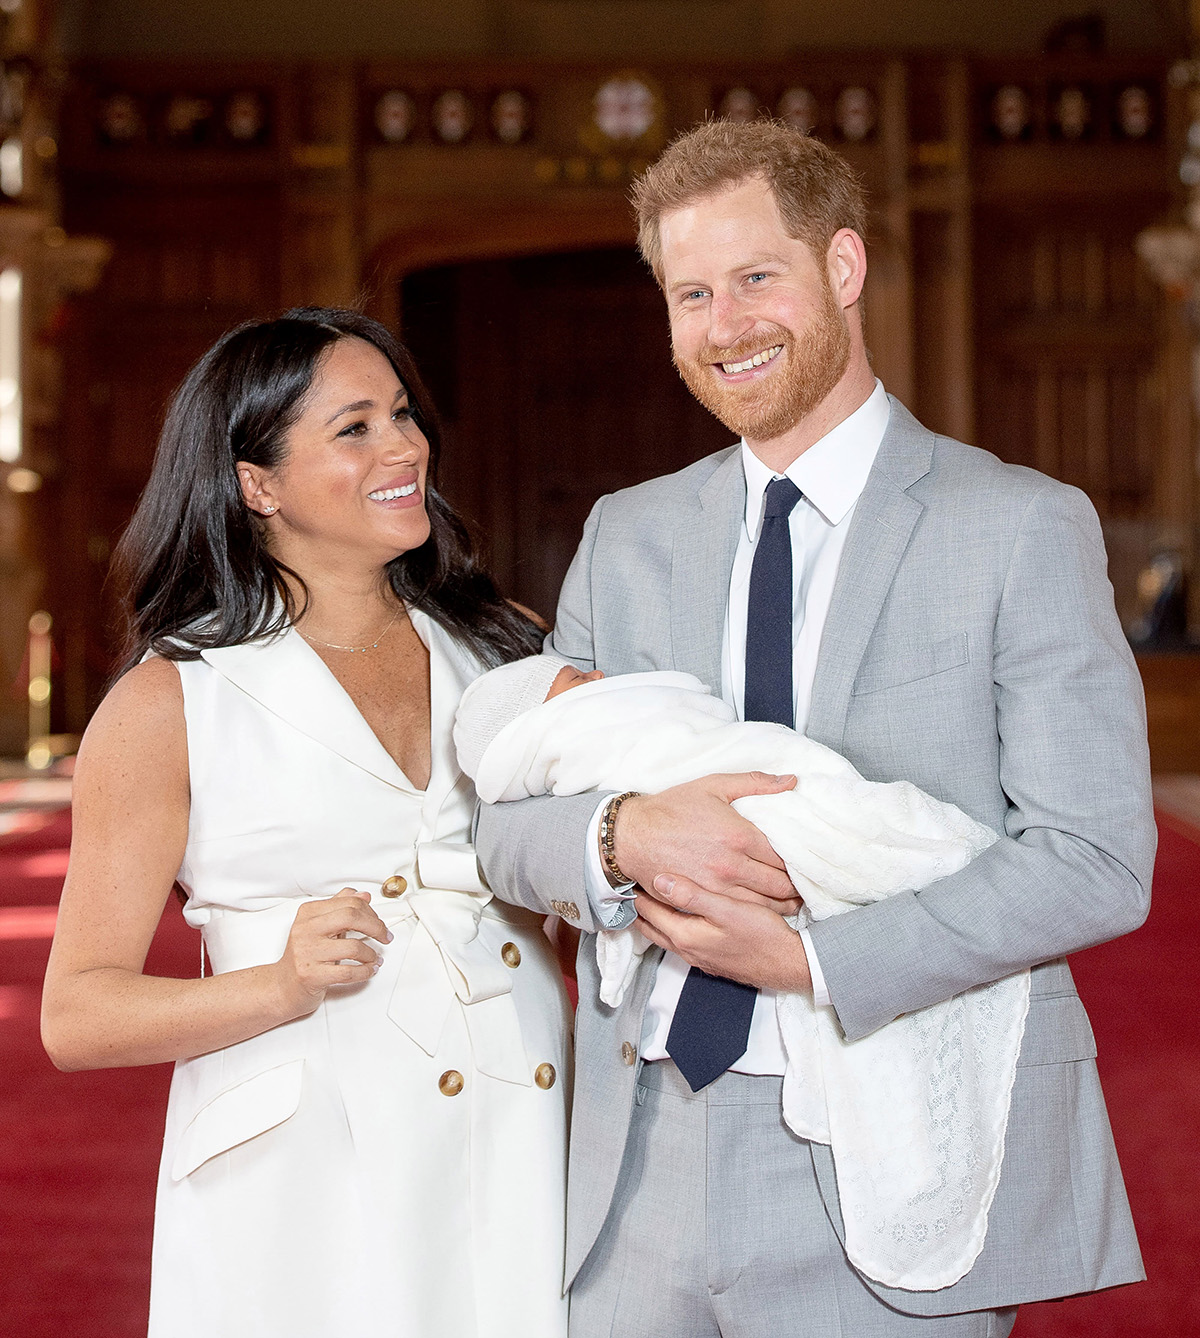 Принц Гарри и Меган Маркл попросили официально крестить малышку Лилибет в Виндзорском замке